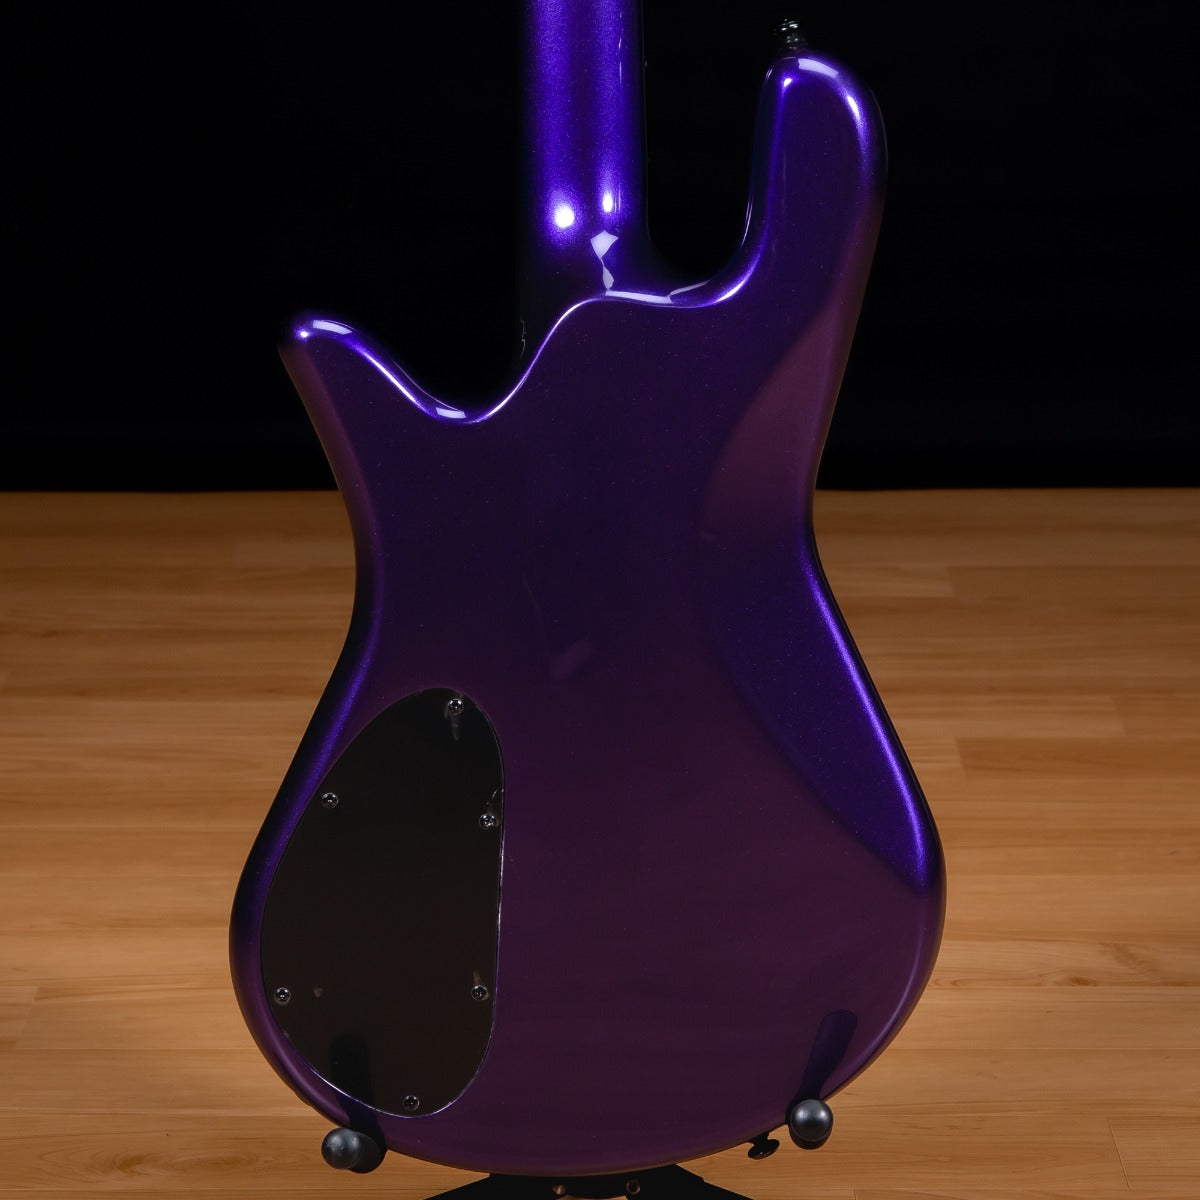 Spector NS Ethos HP 4 Bass Guitar - Plum Crazy Gloss view 3